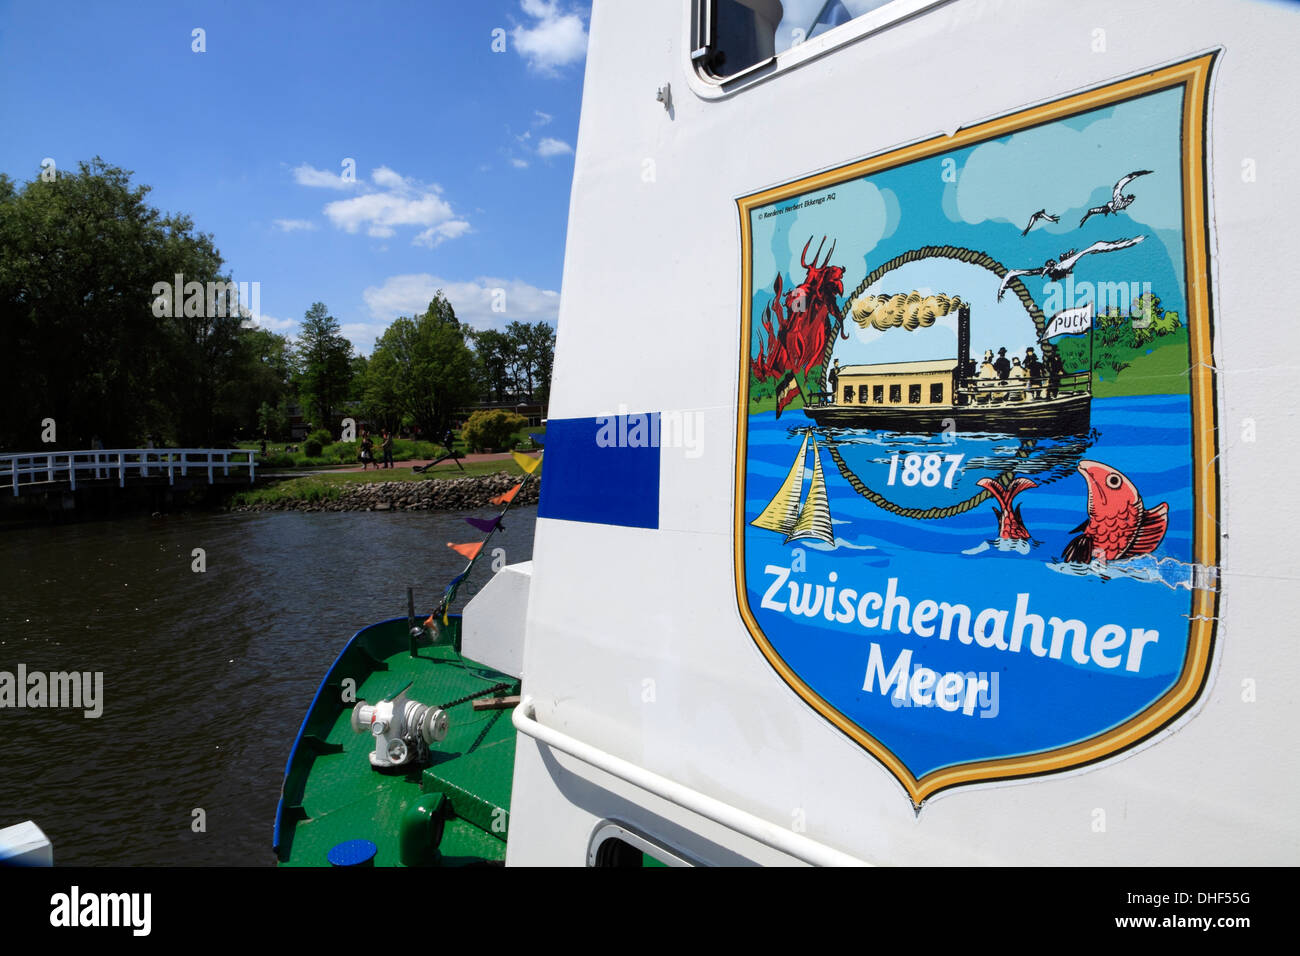 Bad Zwischenahn, tourist cruise ship at Zwischenahner Meer pier, Ammerland,  Lower Saxony, Germany Stock Photo